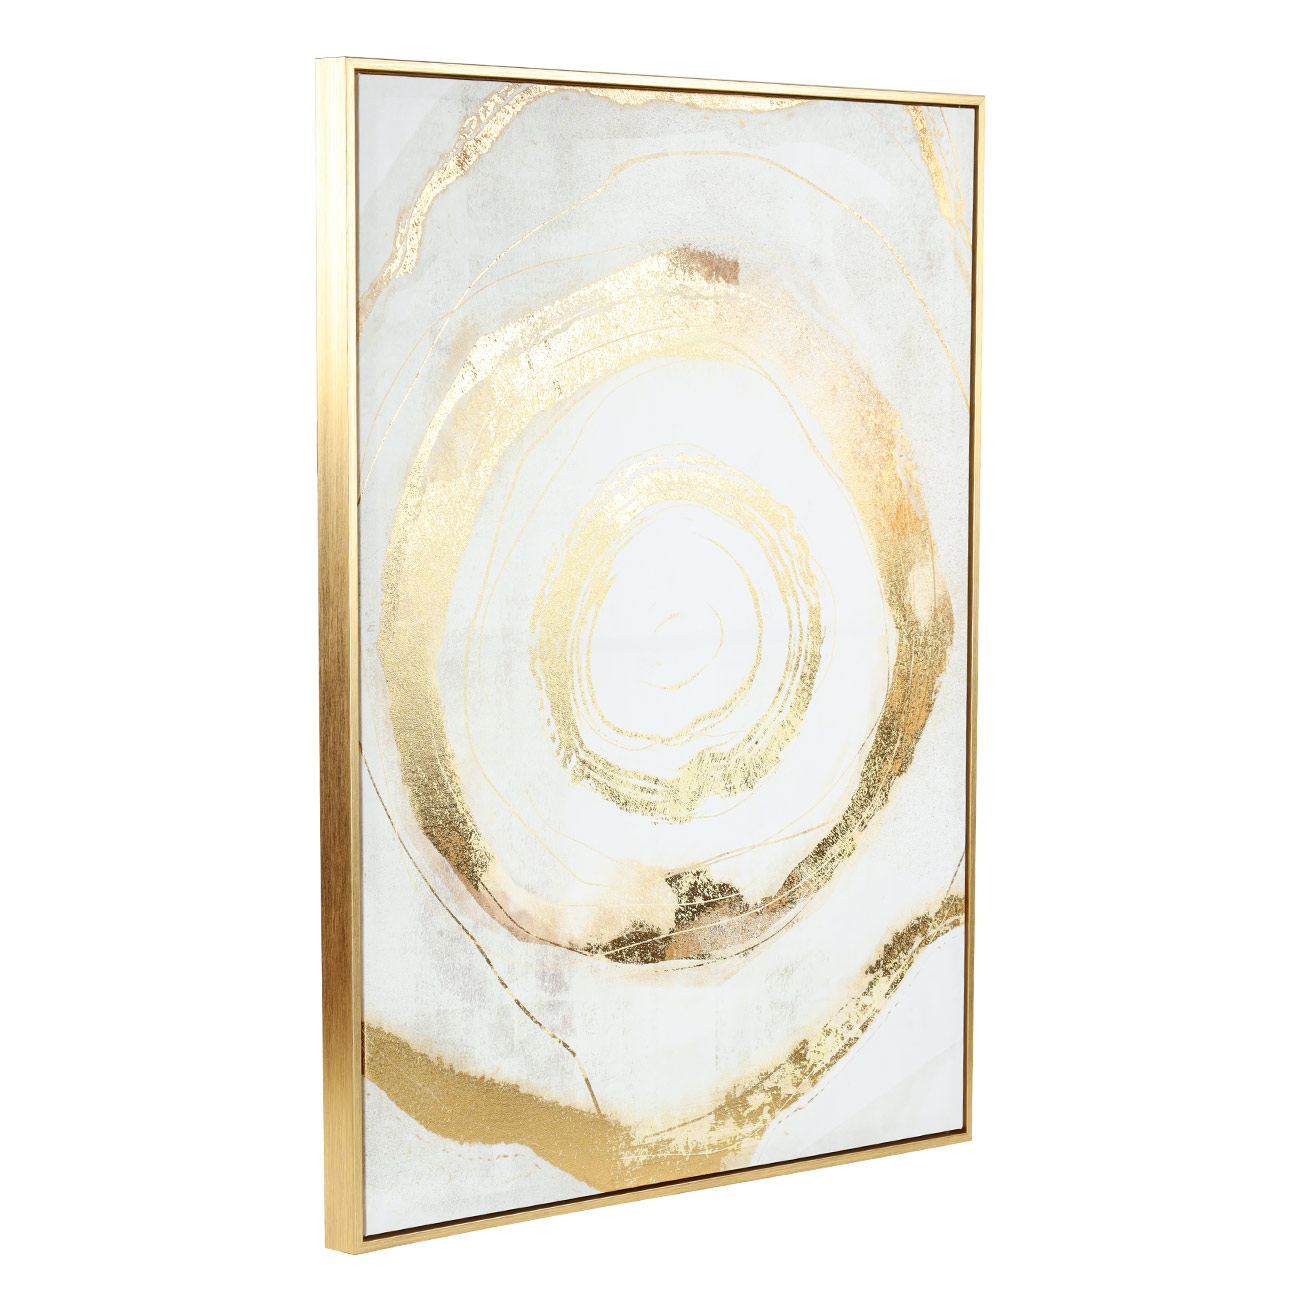 Картина в раме, 75х100 см, холст/фольга, золотисто-бежевая, Круги, Abstract изображение № 2